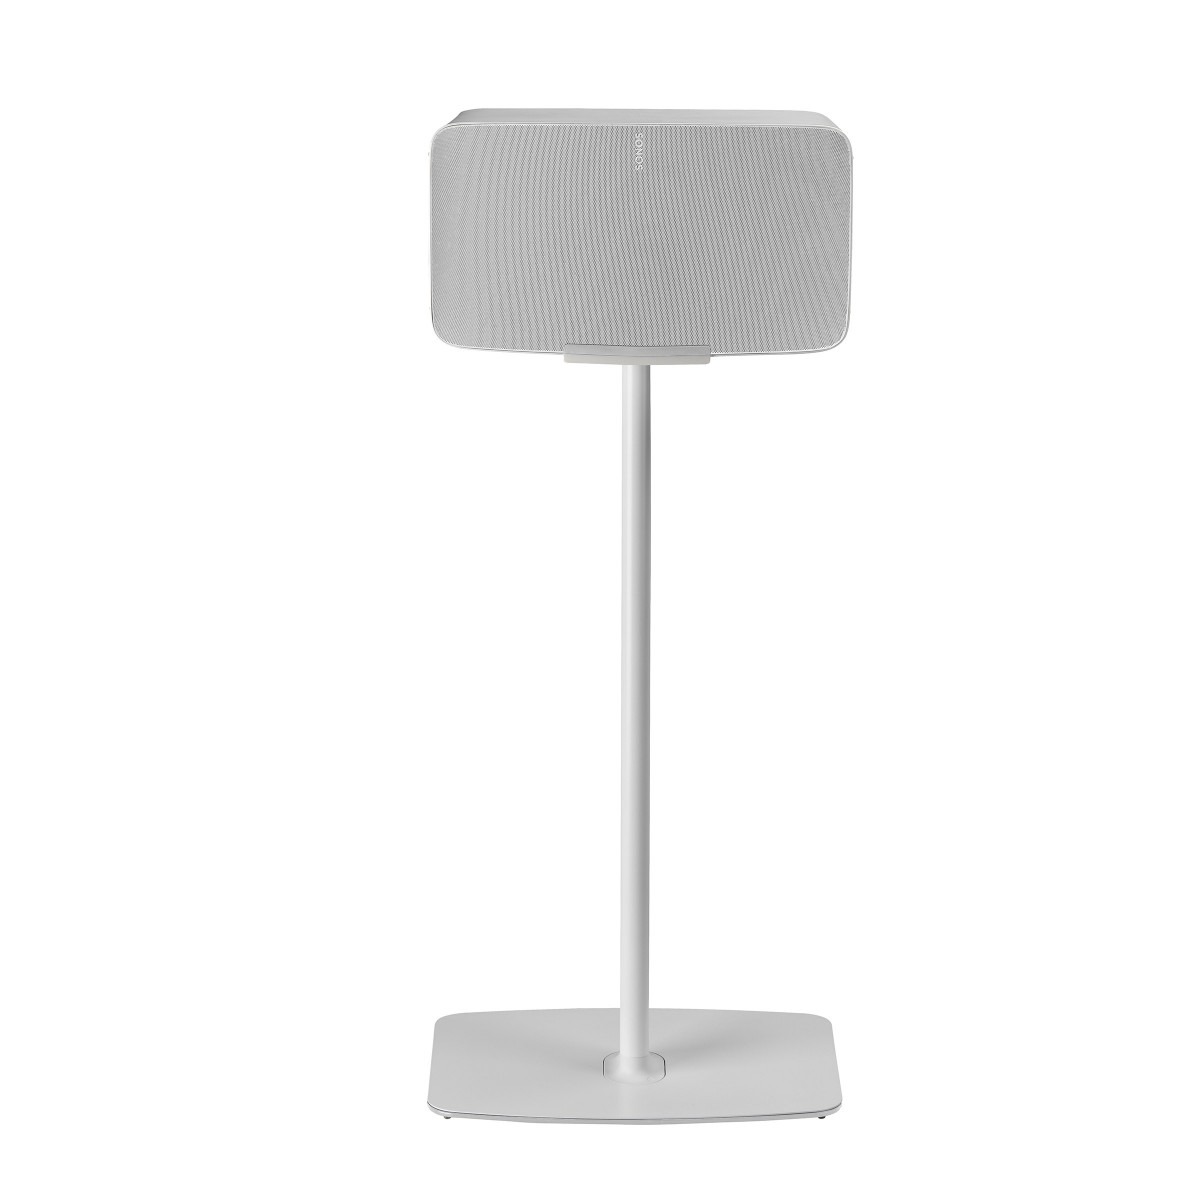 Flexson FLXS5FS1011 - stand - for speaker(s) - white